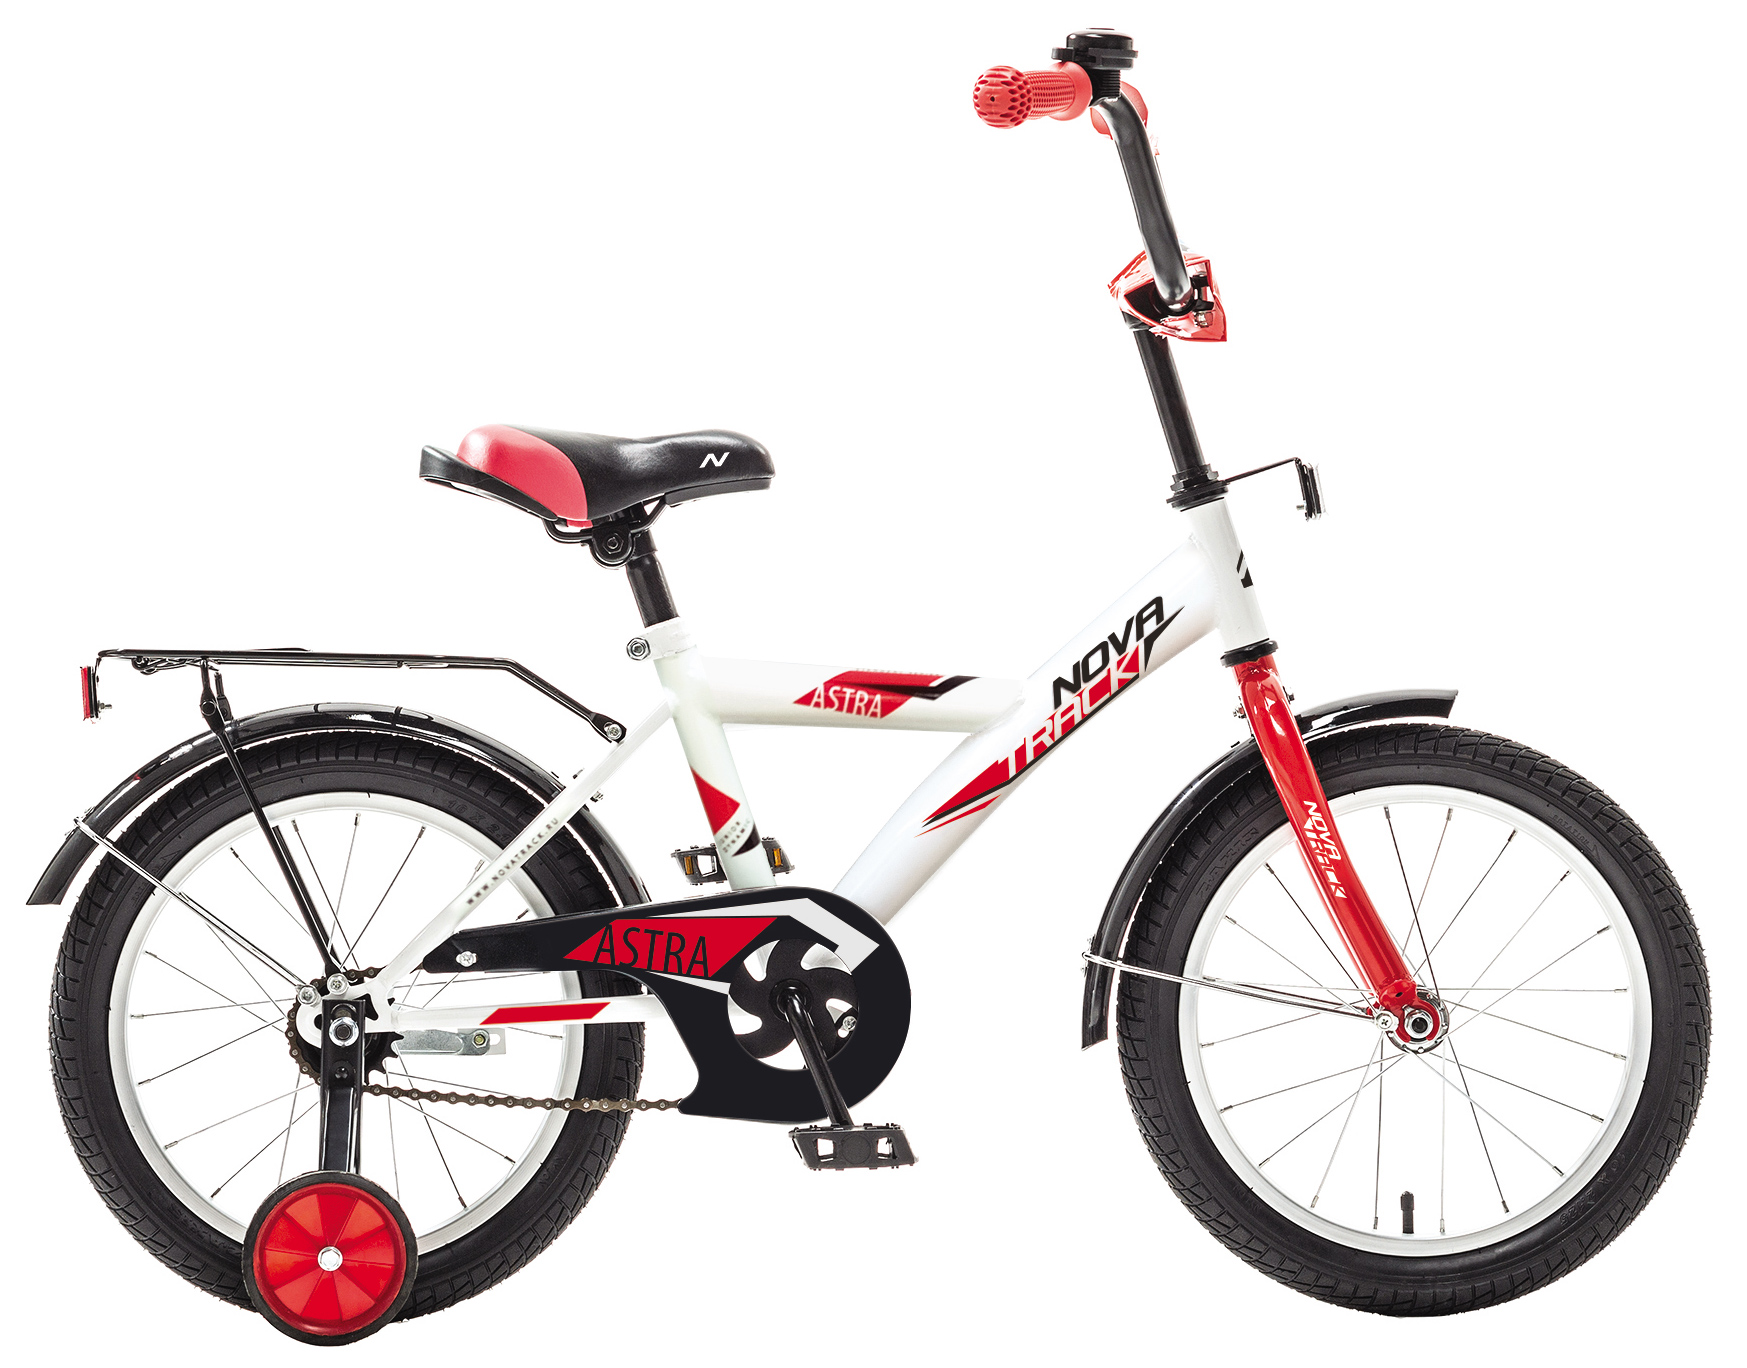  Отзывы о Детском велосипеде Novatrack Astra 16 2019